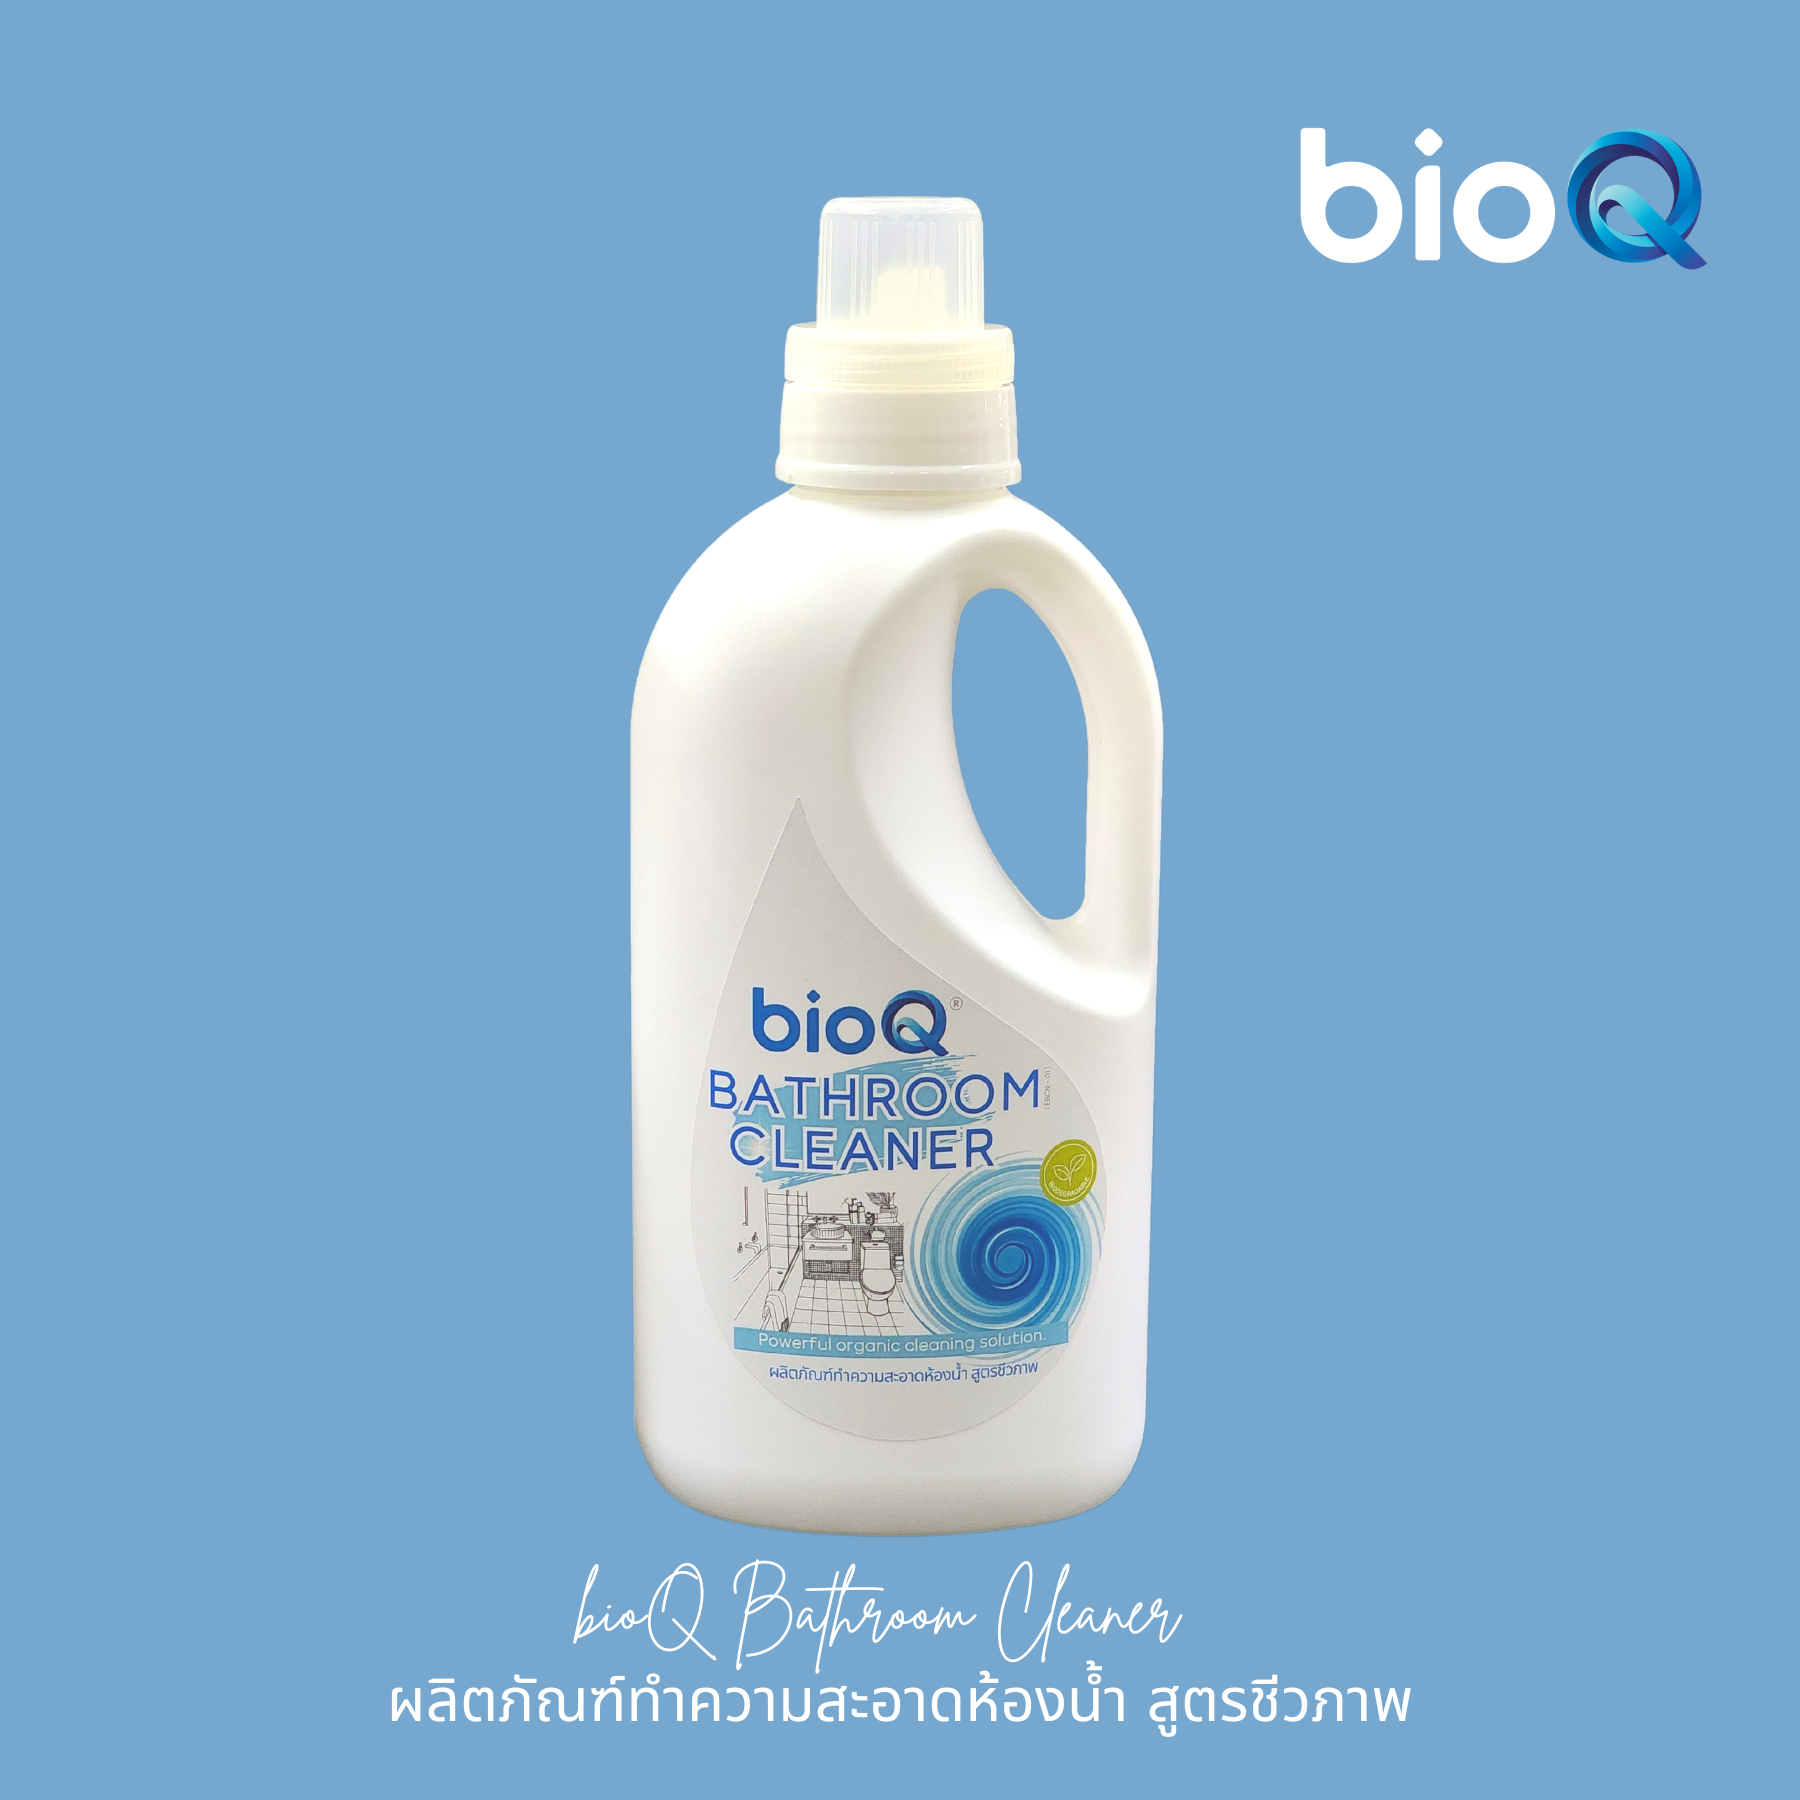 ผลิตภัณฑ์ทำความสะอาดห้องน้ำ ไบโอคิว บาธรูม คลีนเนอร์  / bioQ Bathroom Cleaner 1000 ml